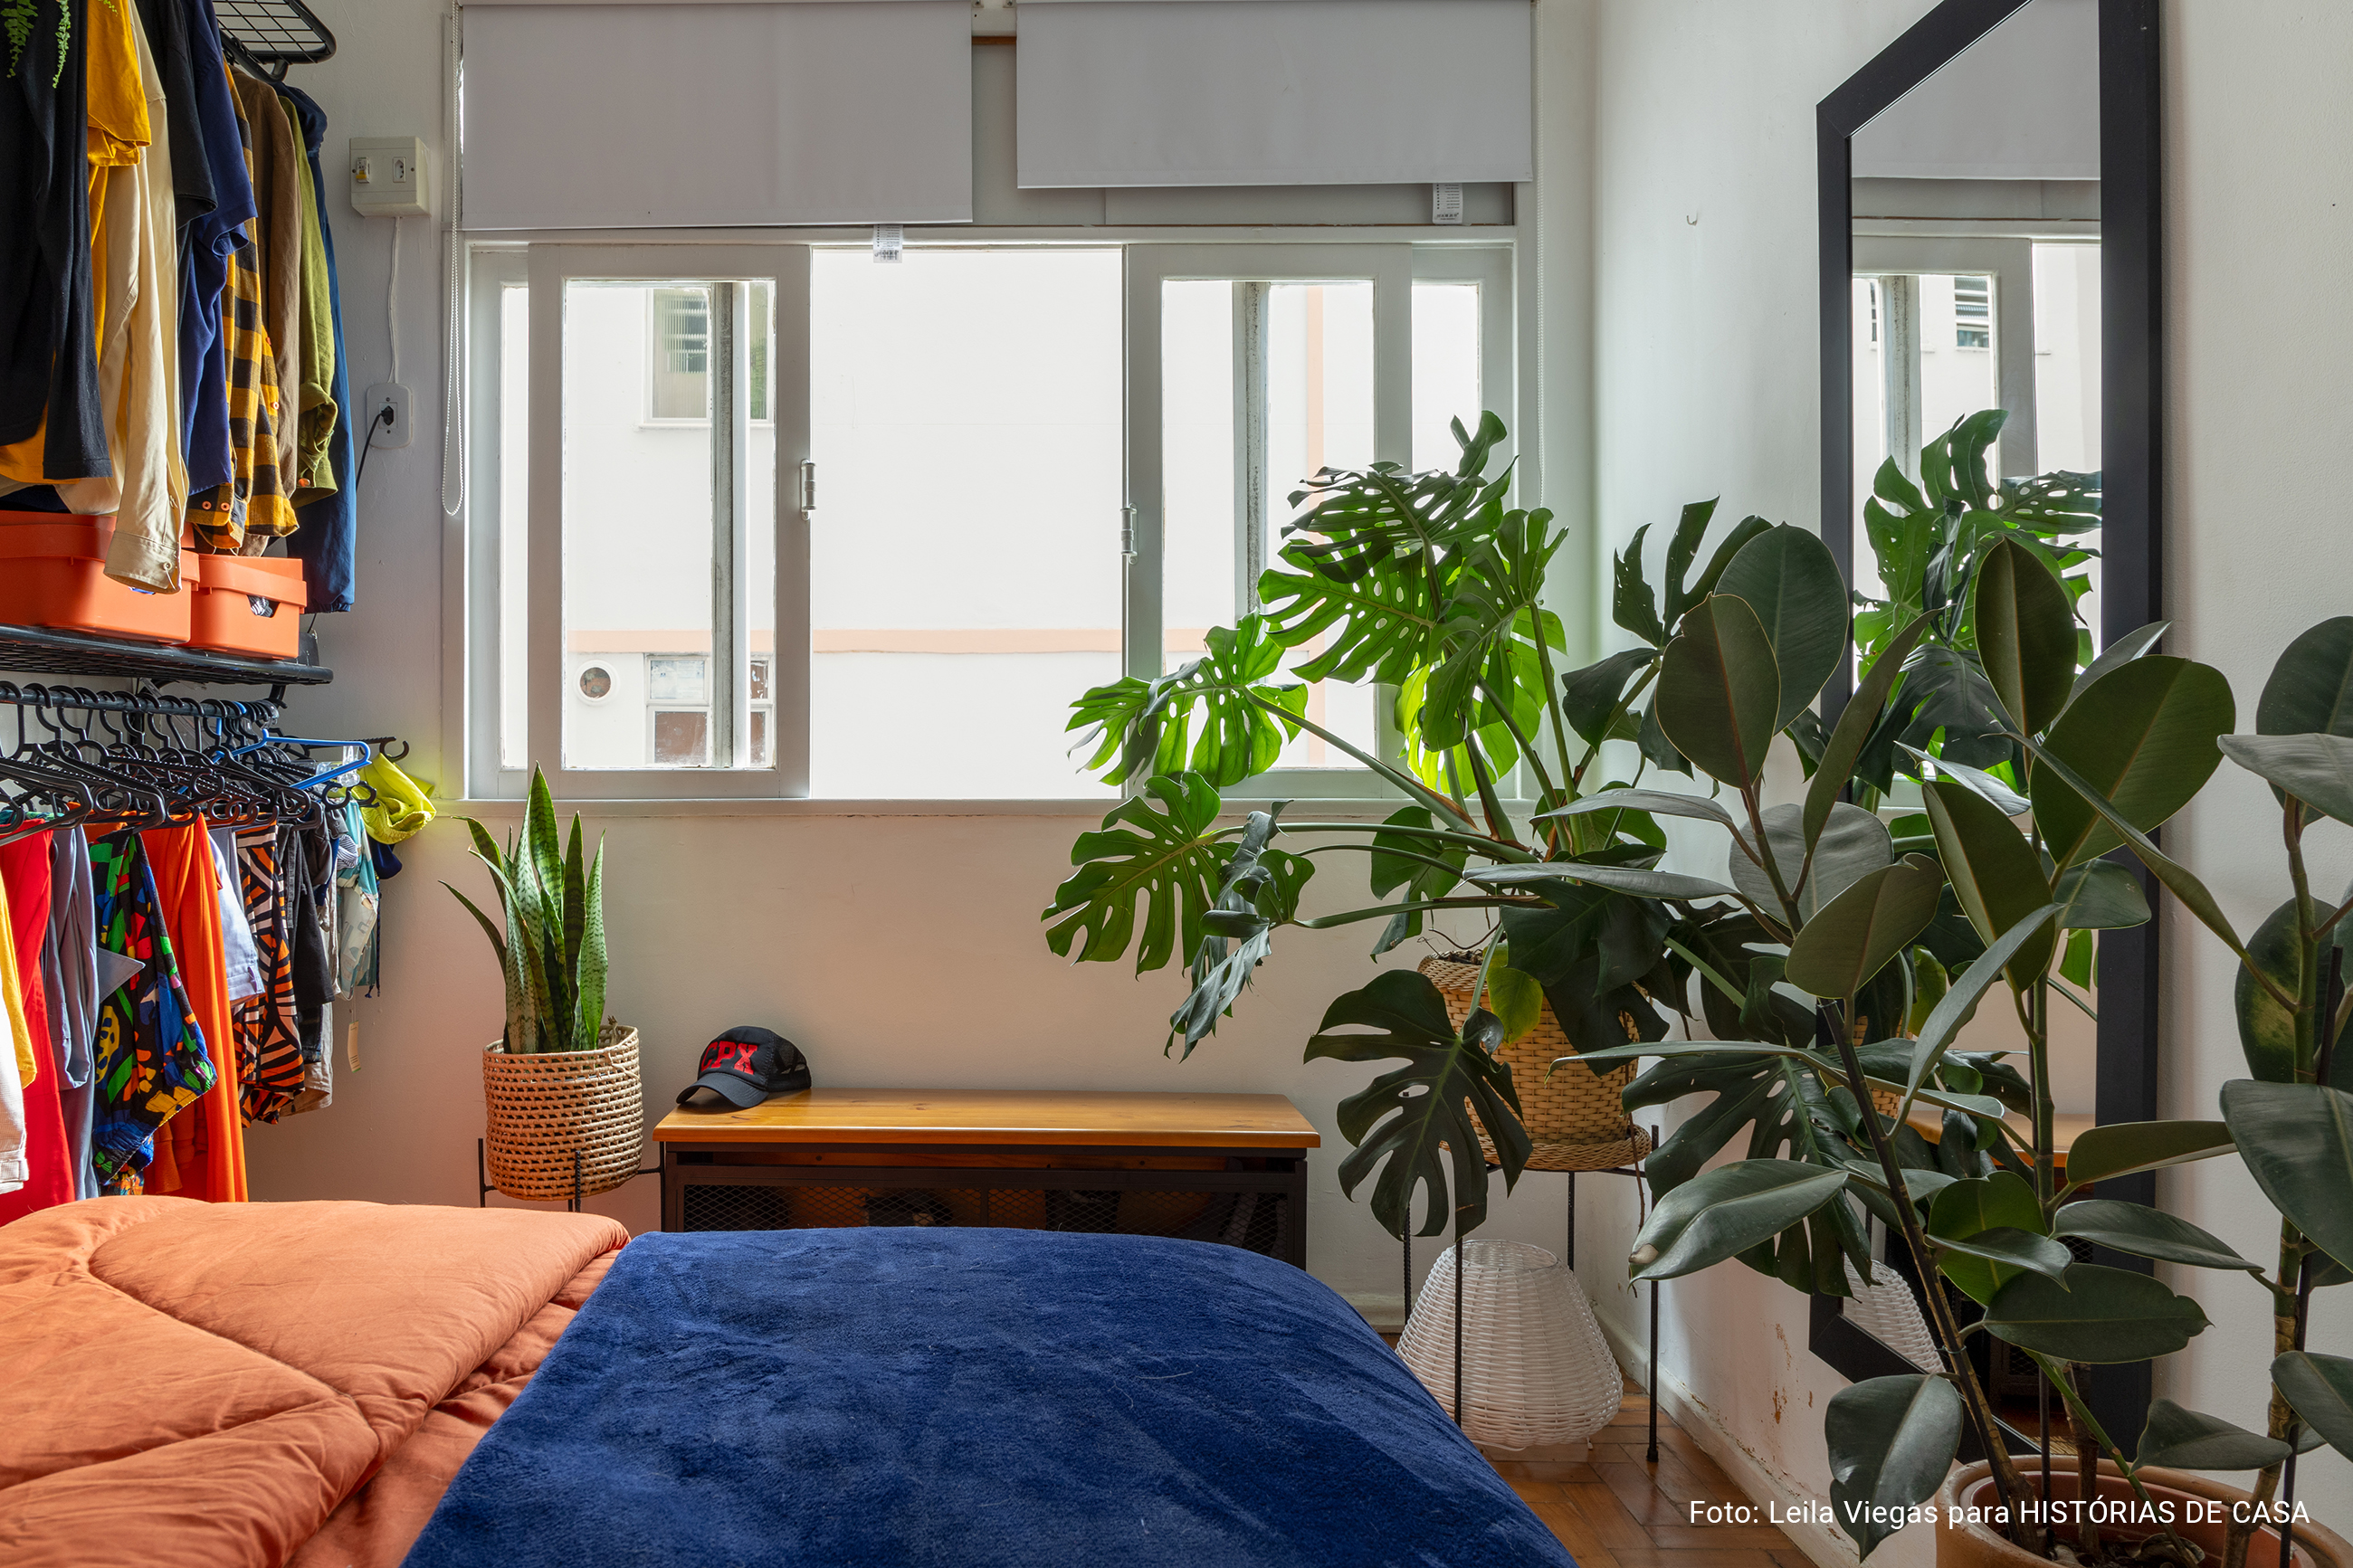 Apartamento pequeno, quarto com plantas e roupa de cama colorida